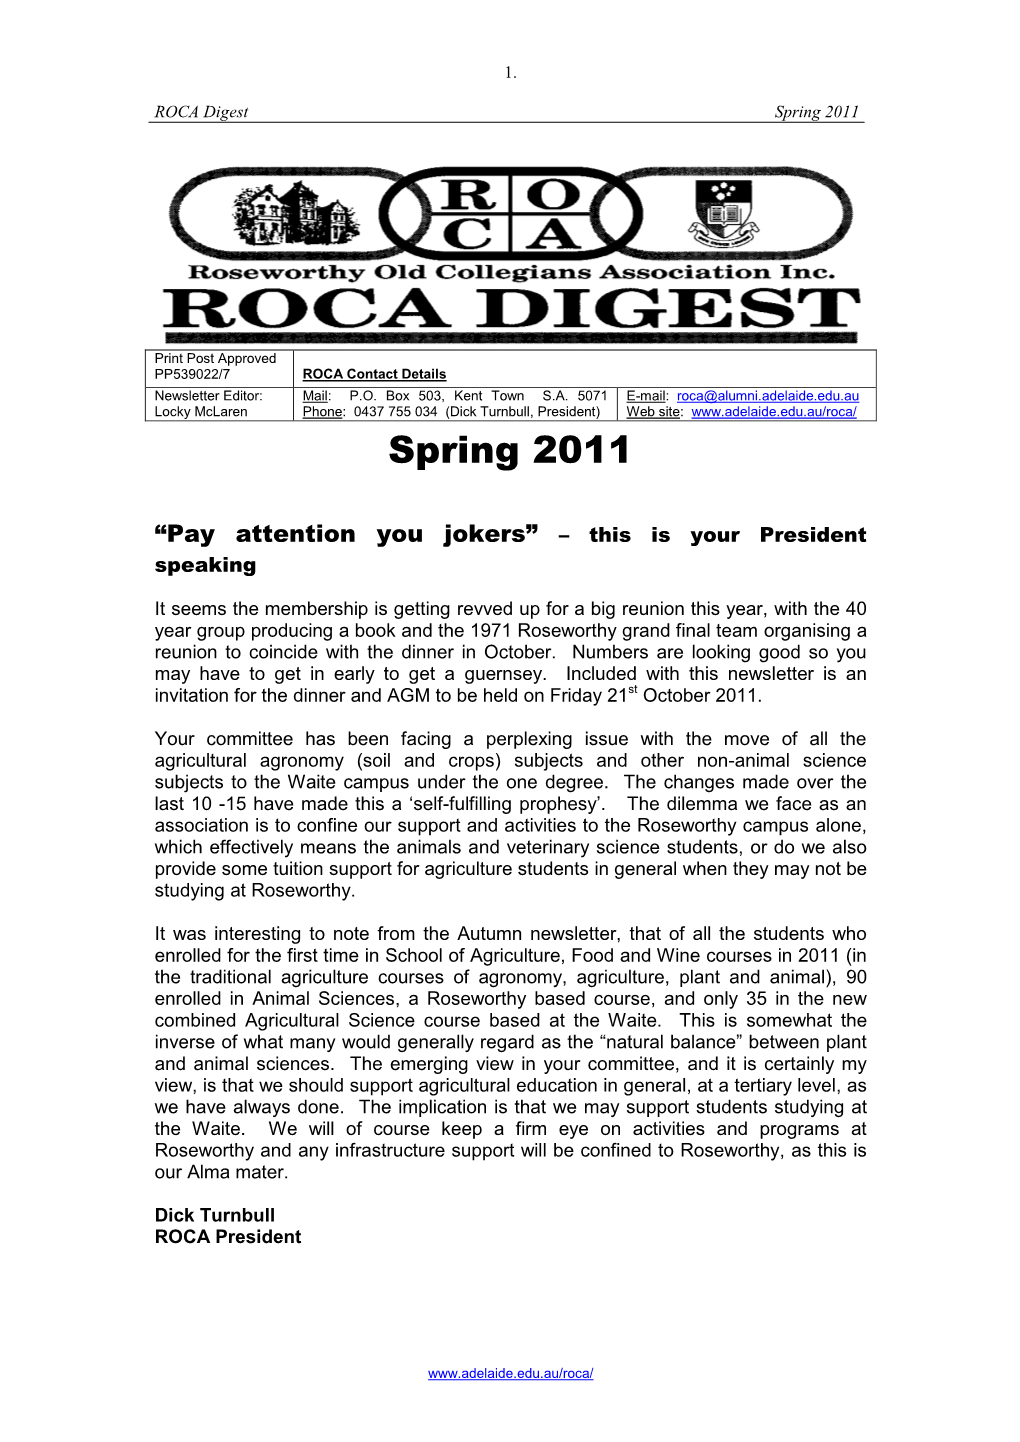 ROCA Digest Spring 2011